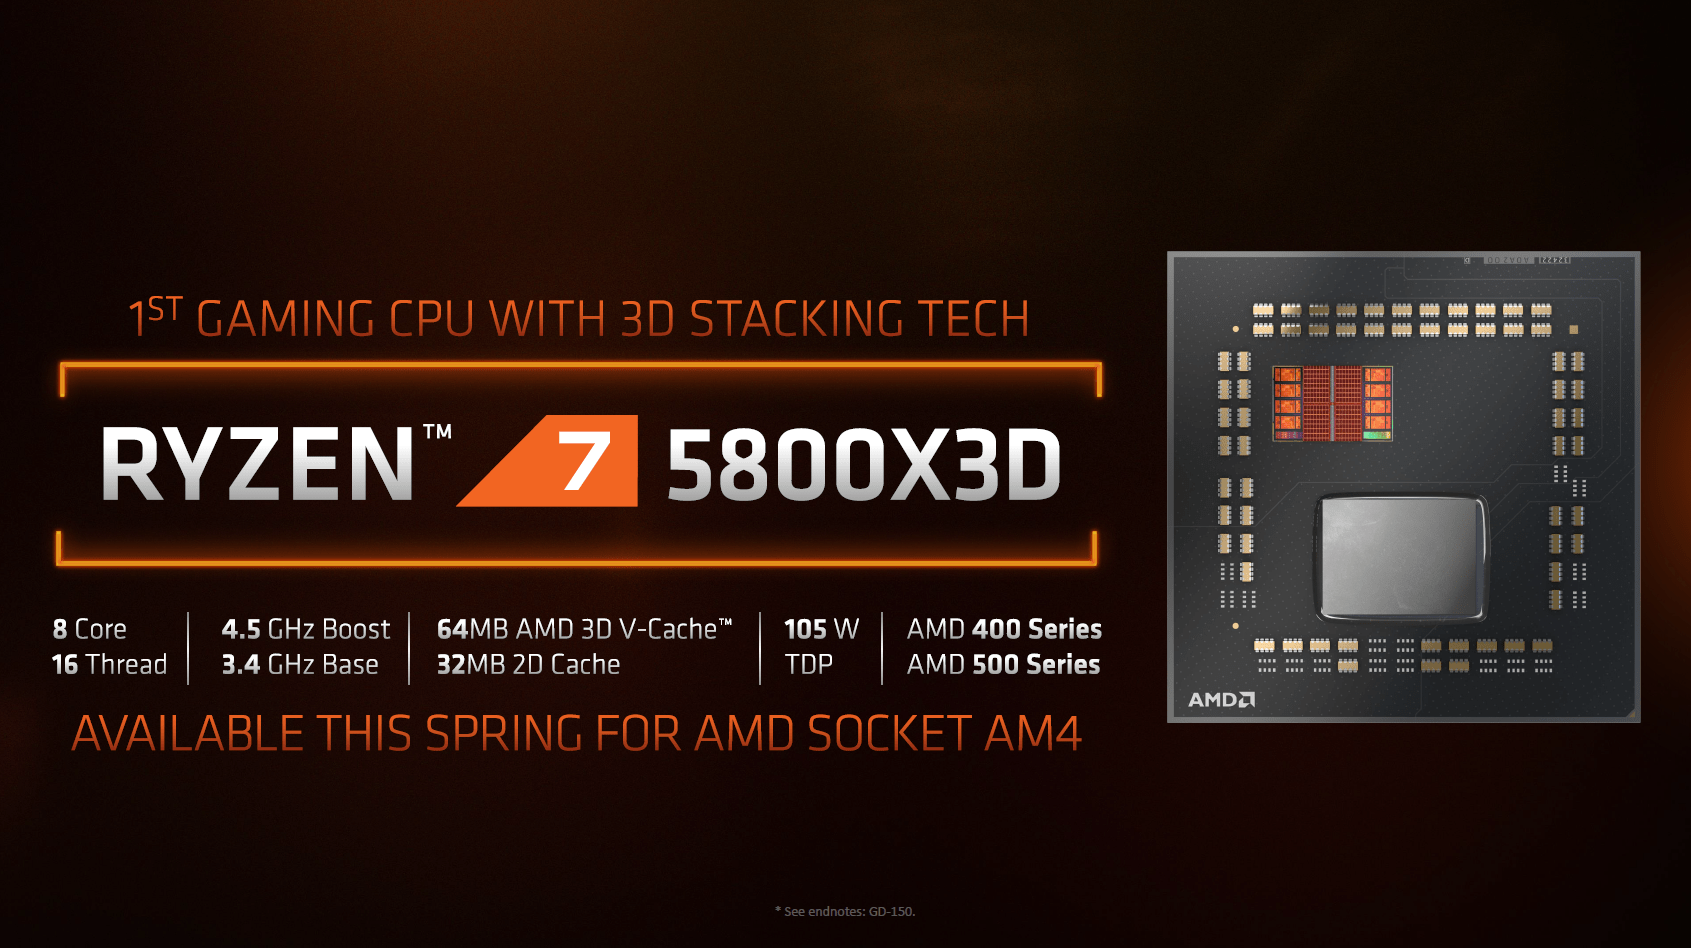 AMD Ryzen 7 5800X3D Slide Vorstellung mit AMD 3D V-Cache schneller als i9-12900K